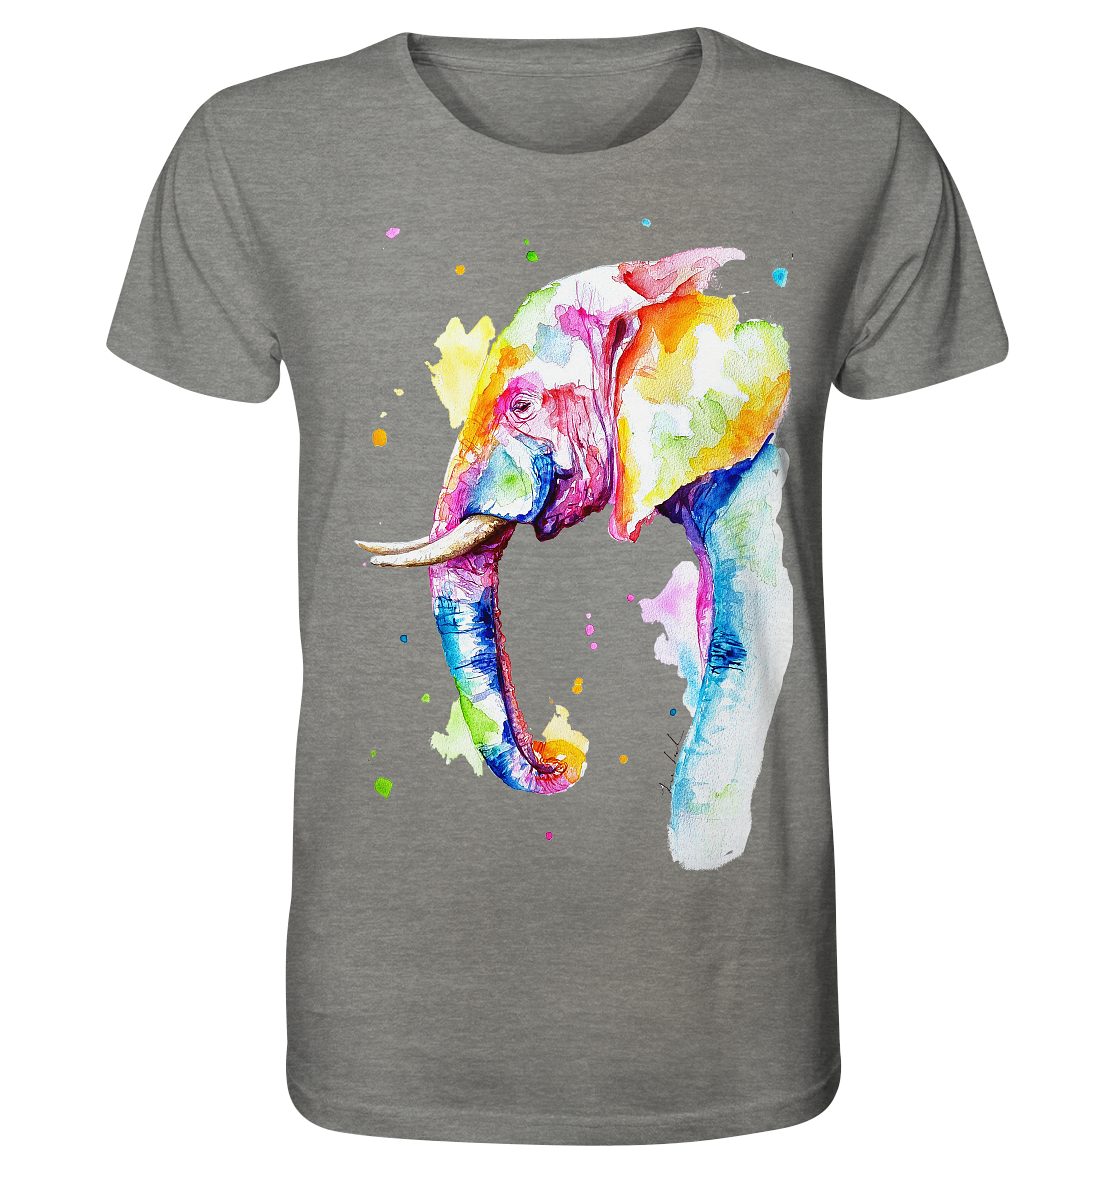 Bunter Elefant - Organic Shirt (meliert)